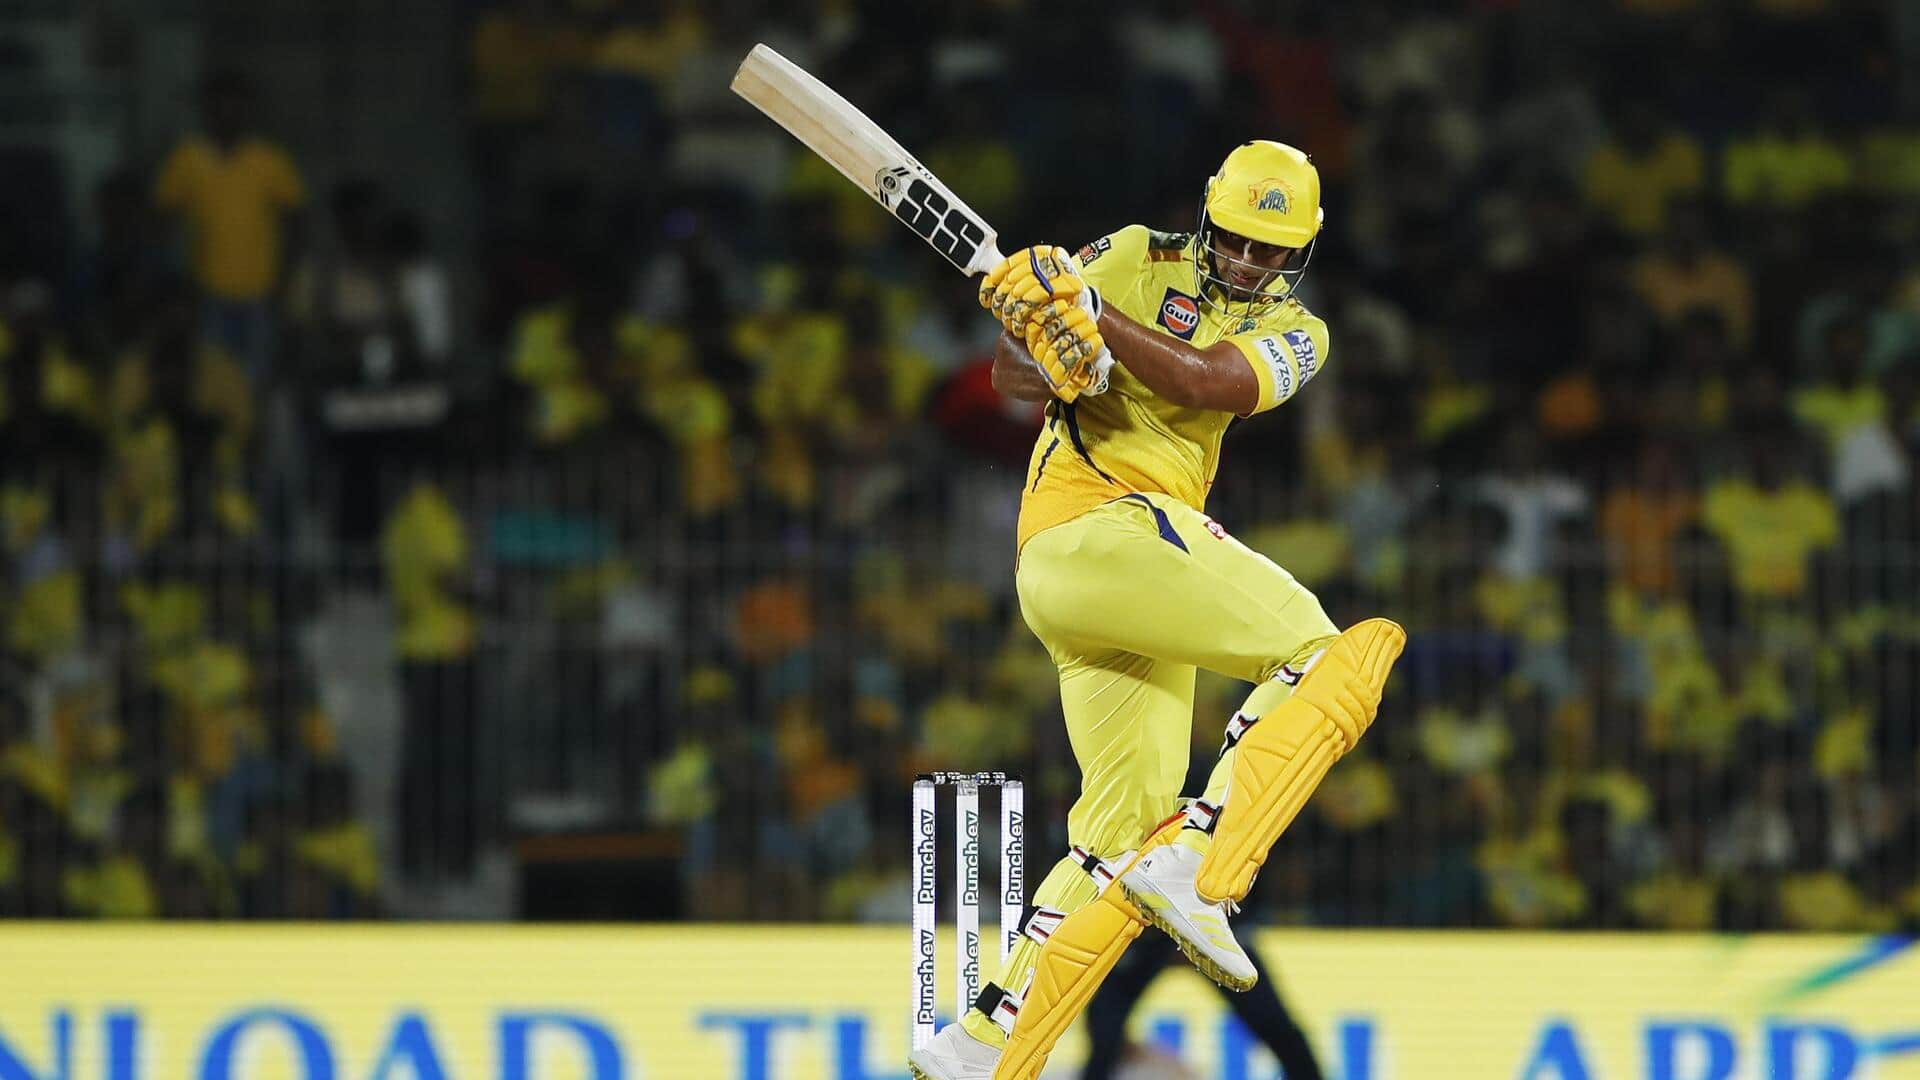 Shivam Dube slams his sixth IPL fifty for CSK: Stats